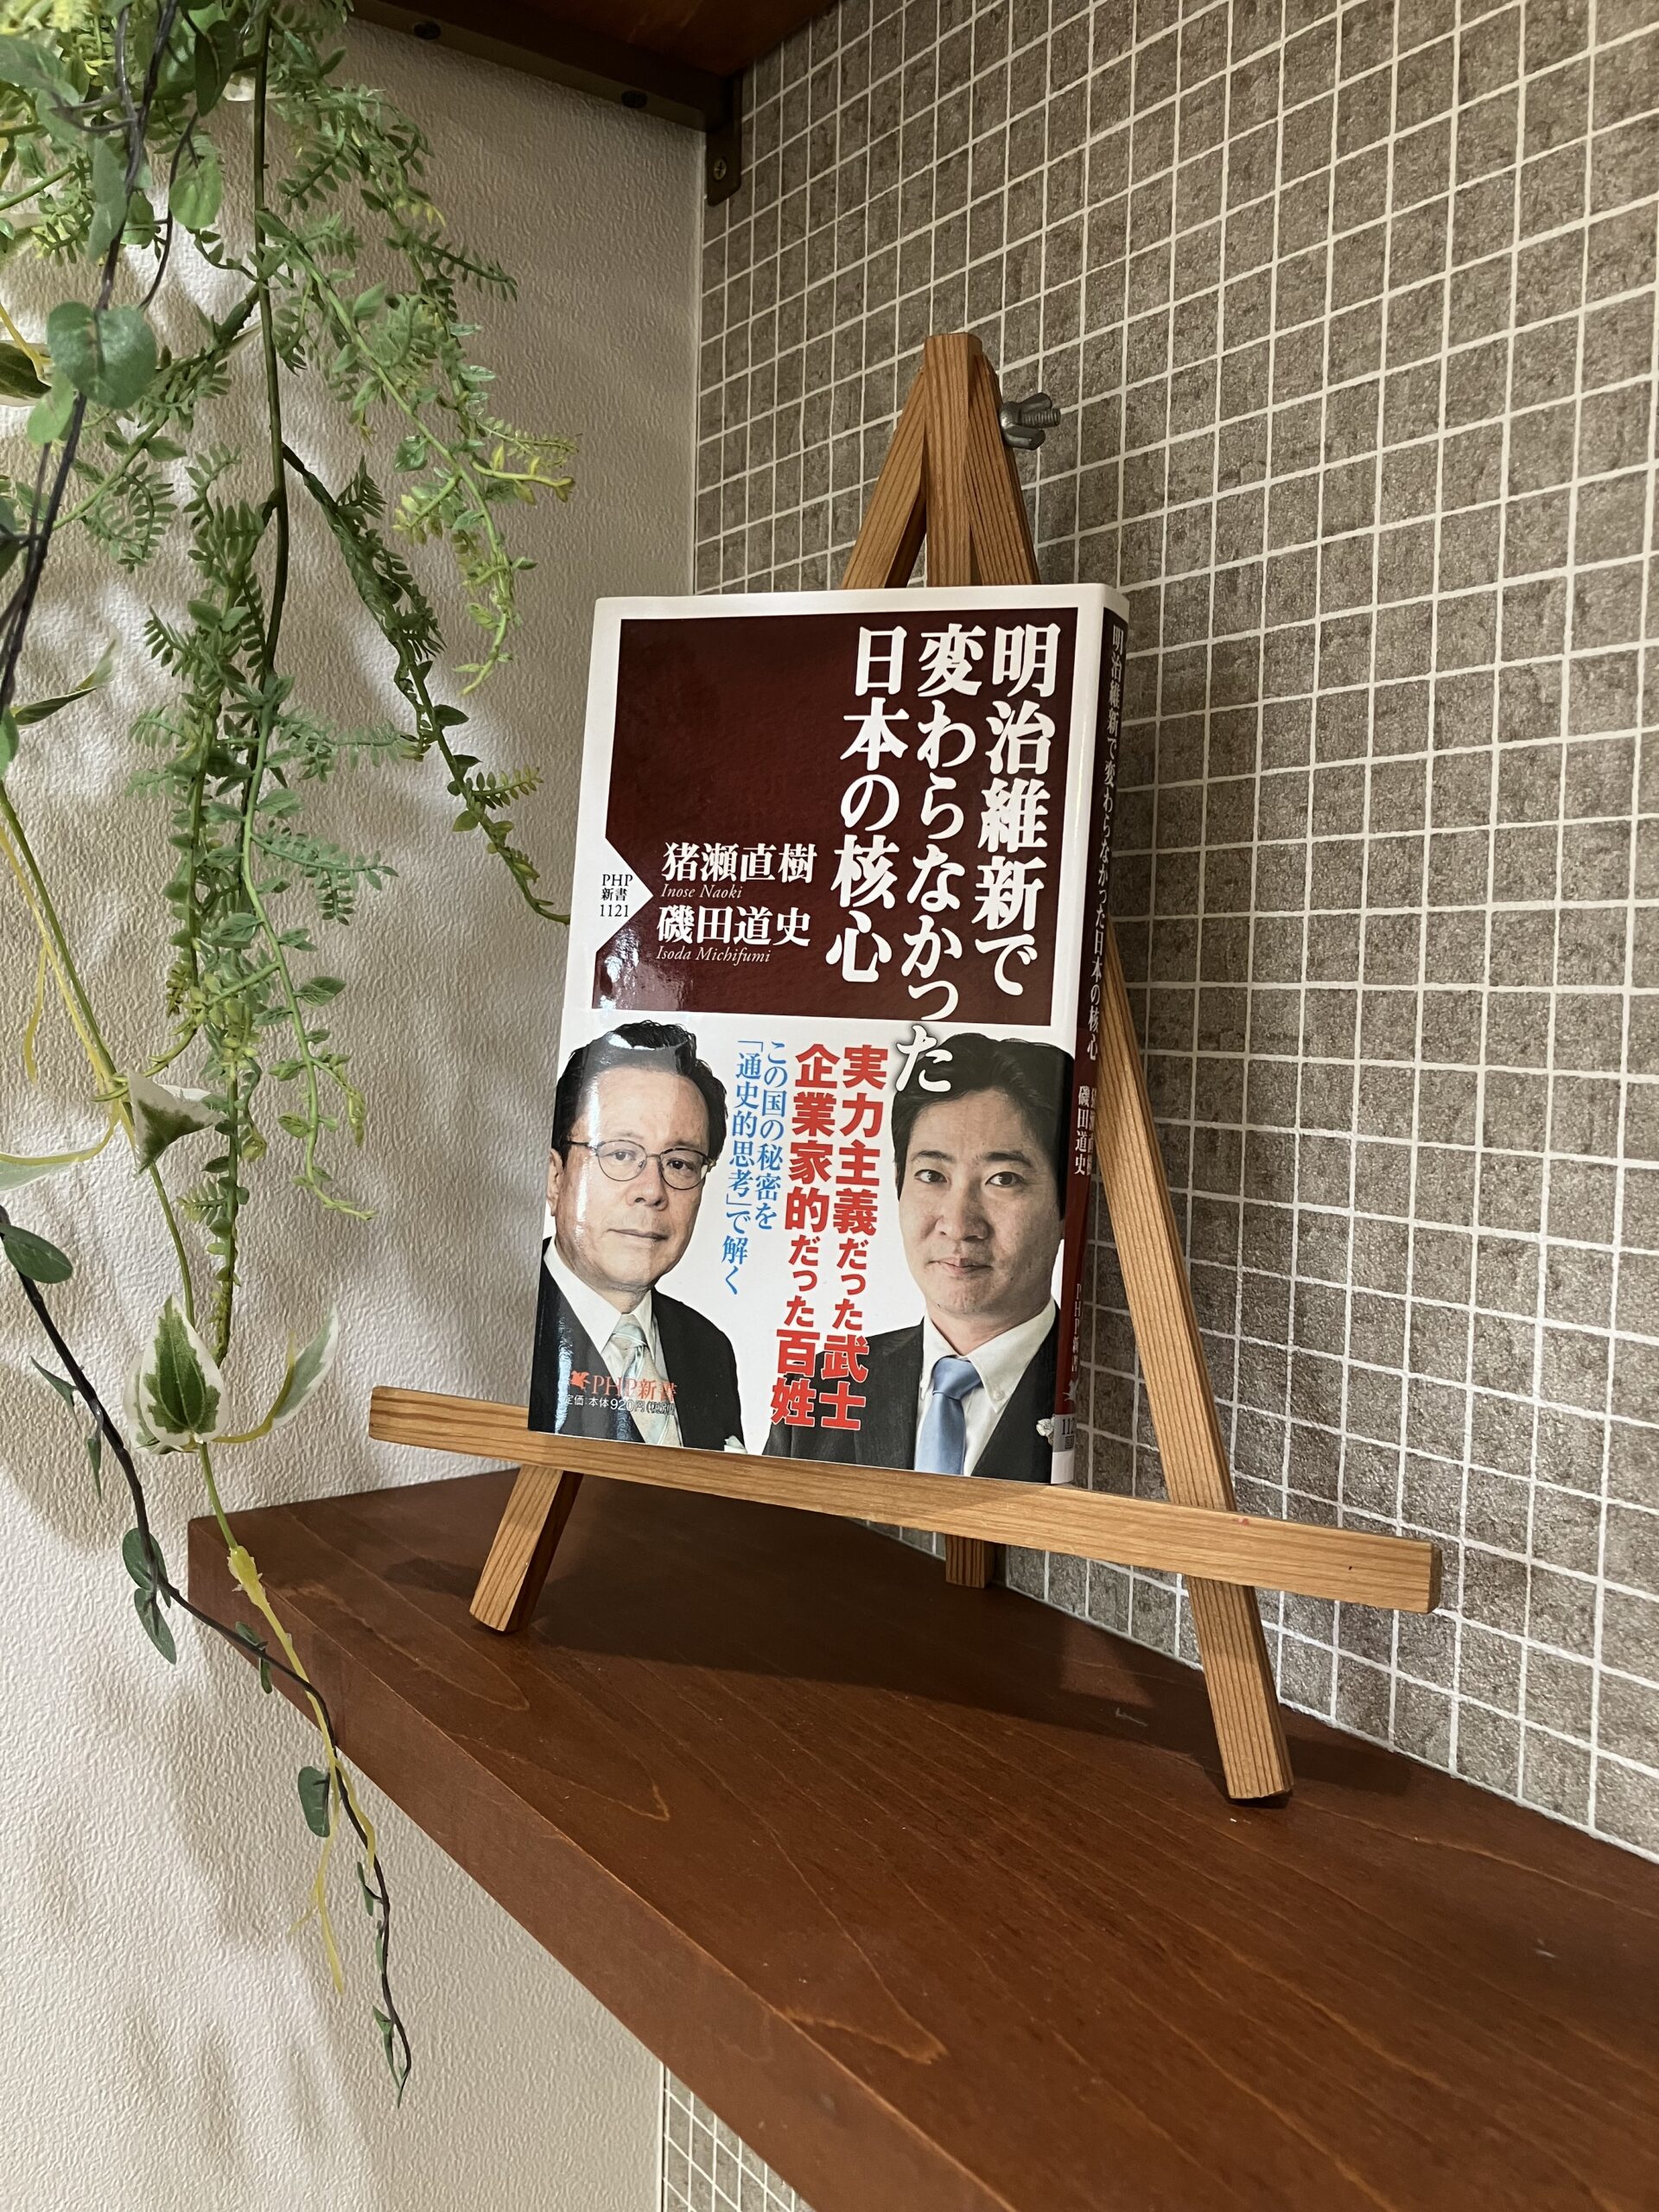 「明治維新で変わらなかった日本の核心」